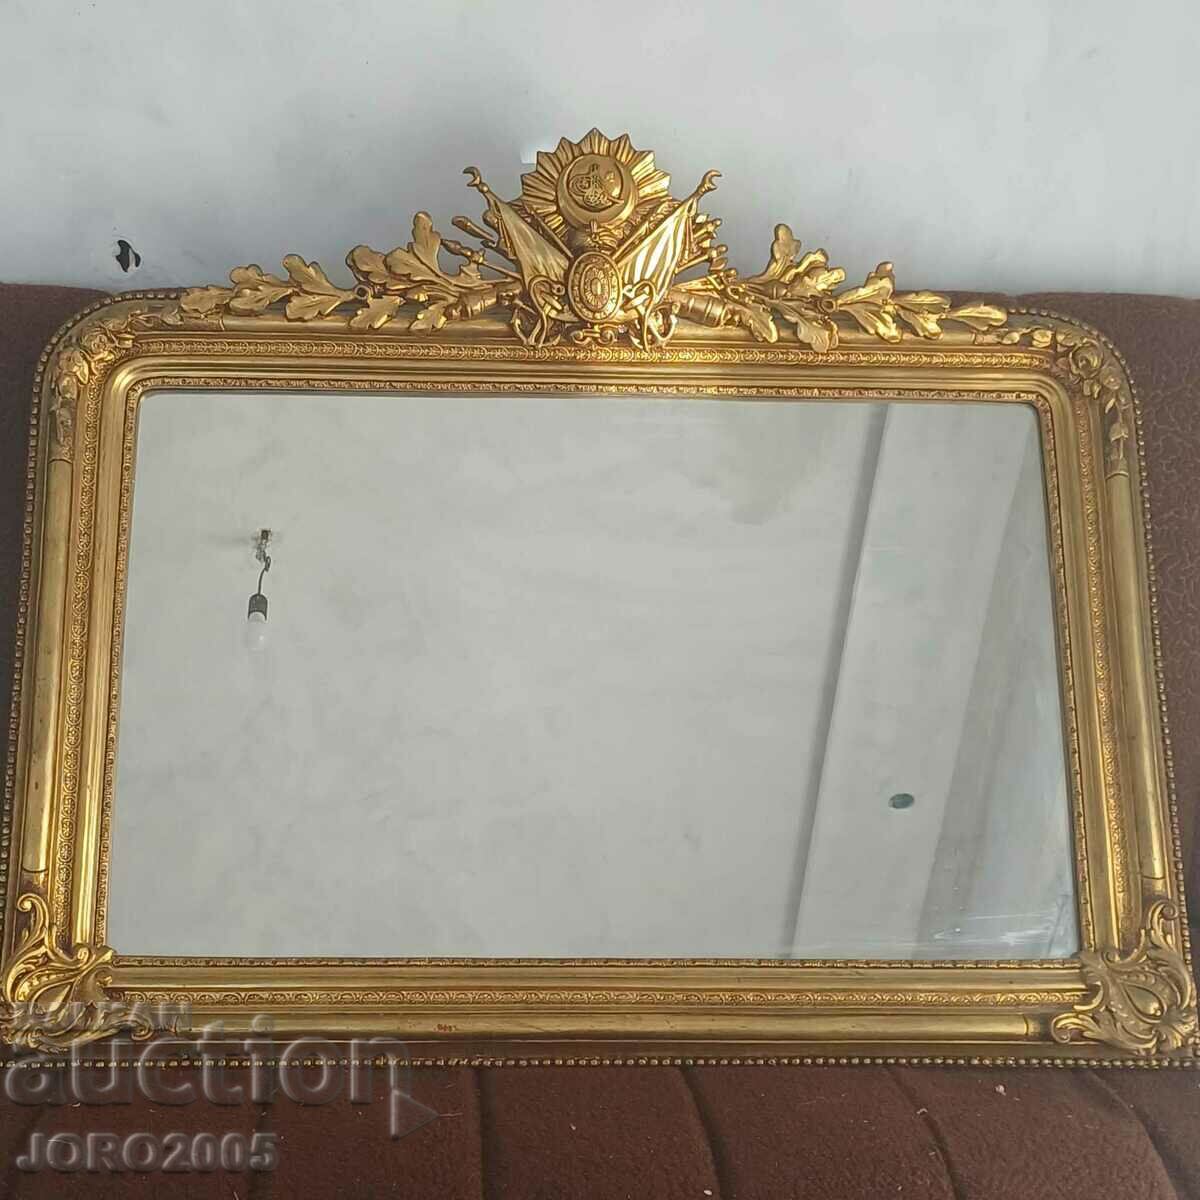 Ottoman period mirror